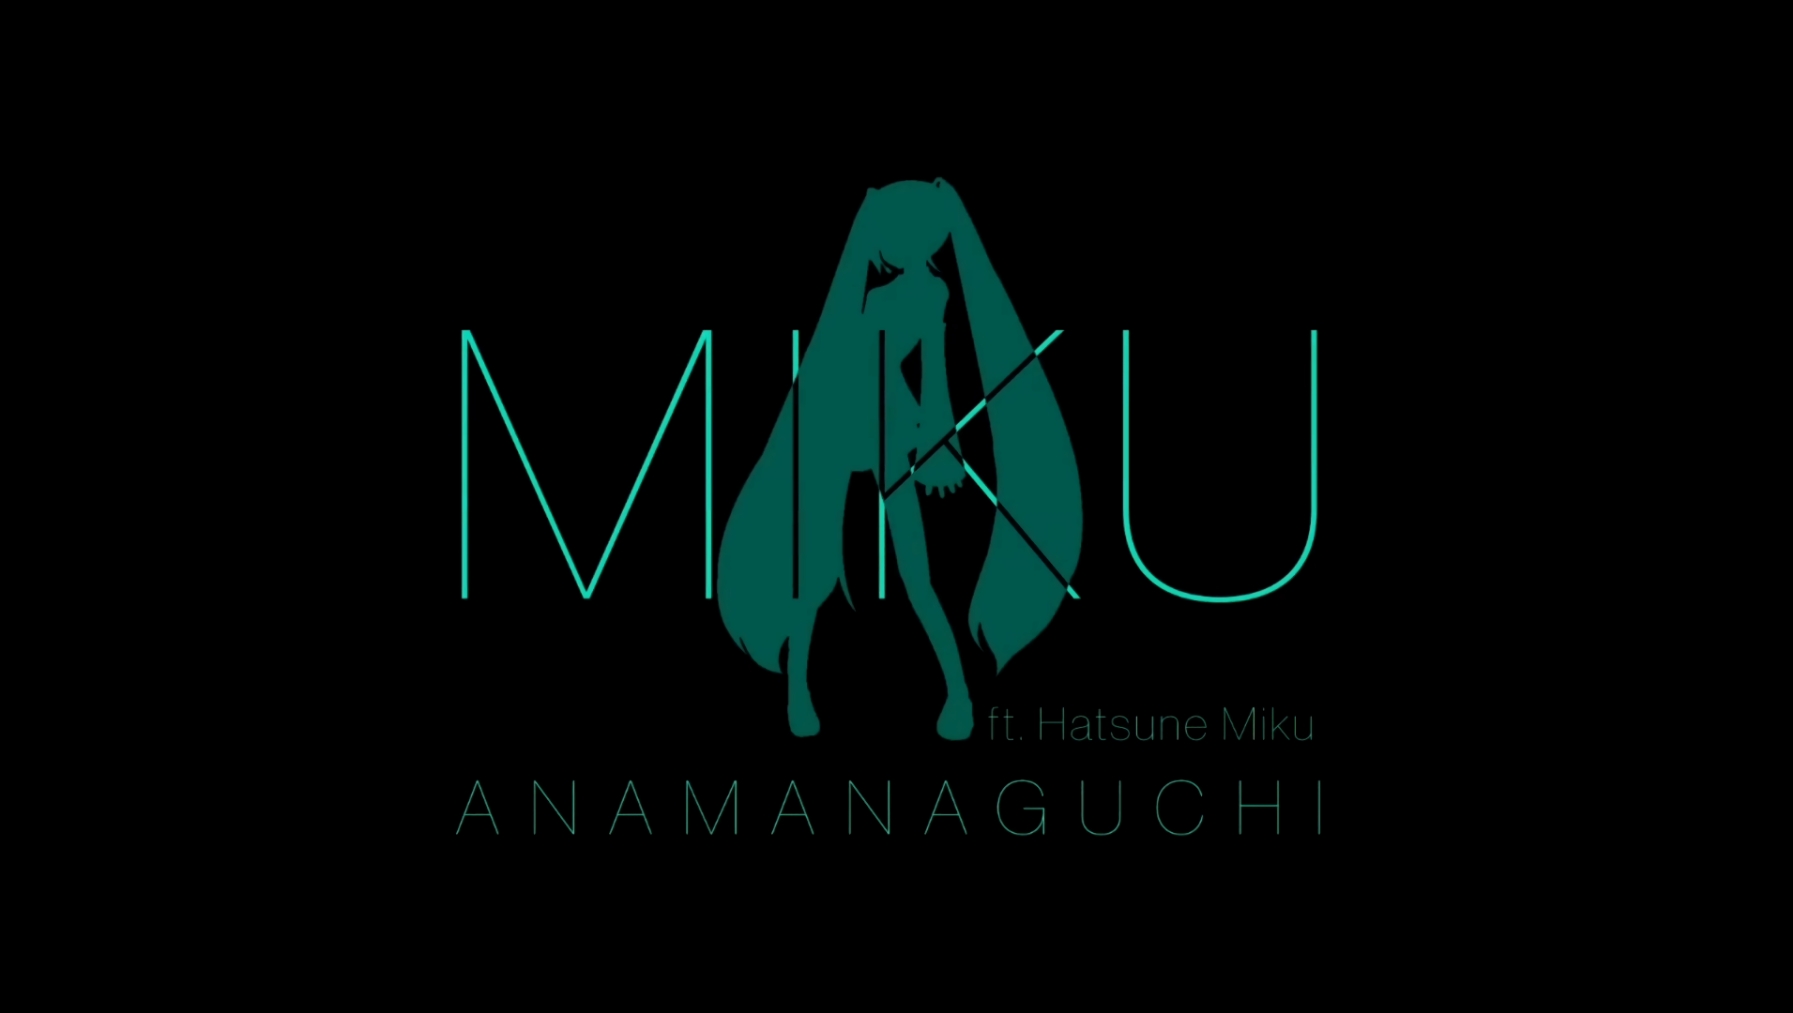 Anamanaguchi - Miku feat. Hatsune Miku